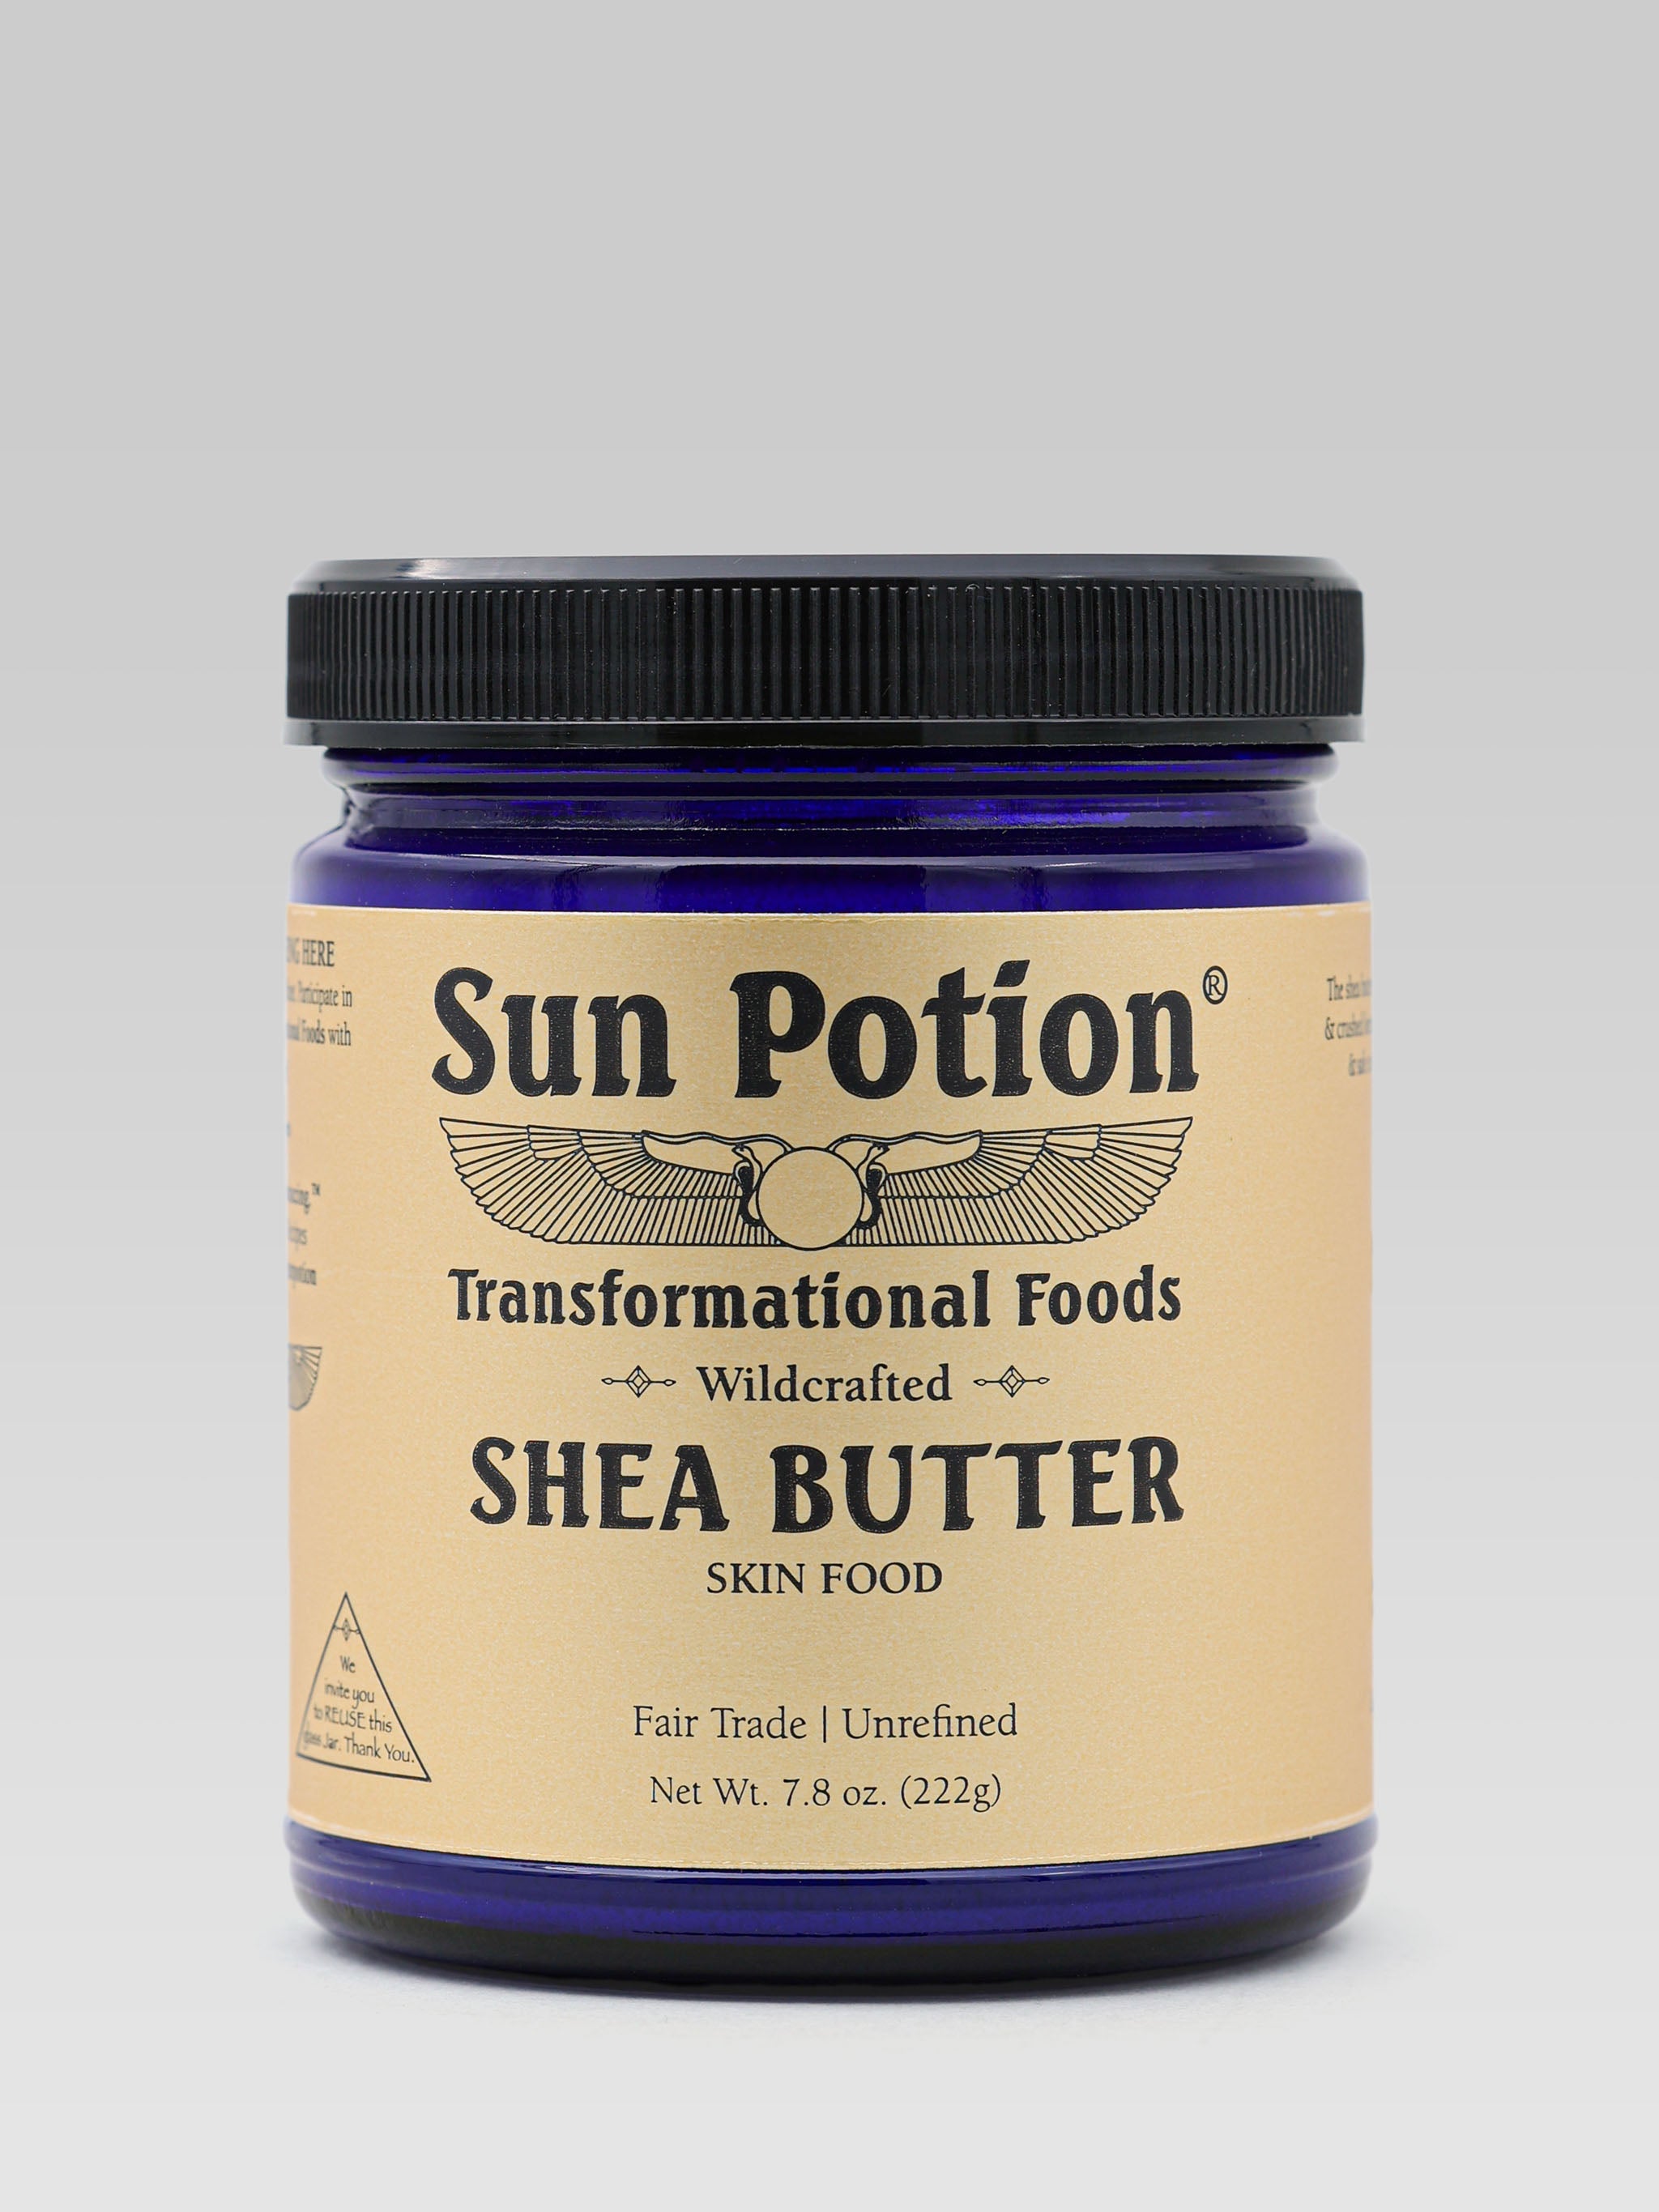 Sun Potion Shea Butter product shot